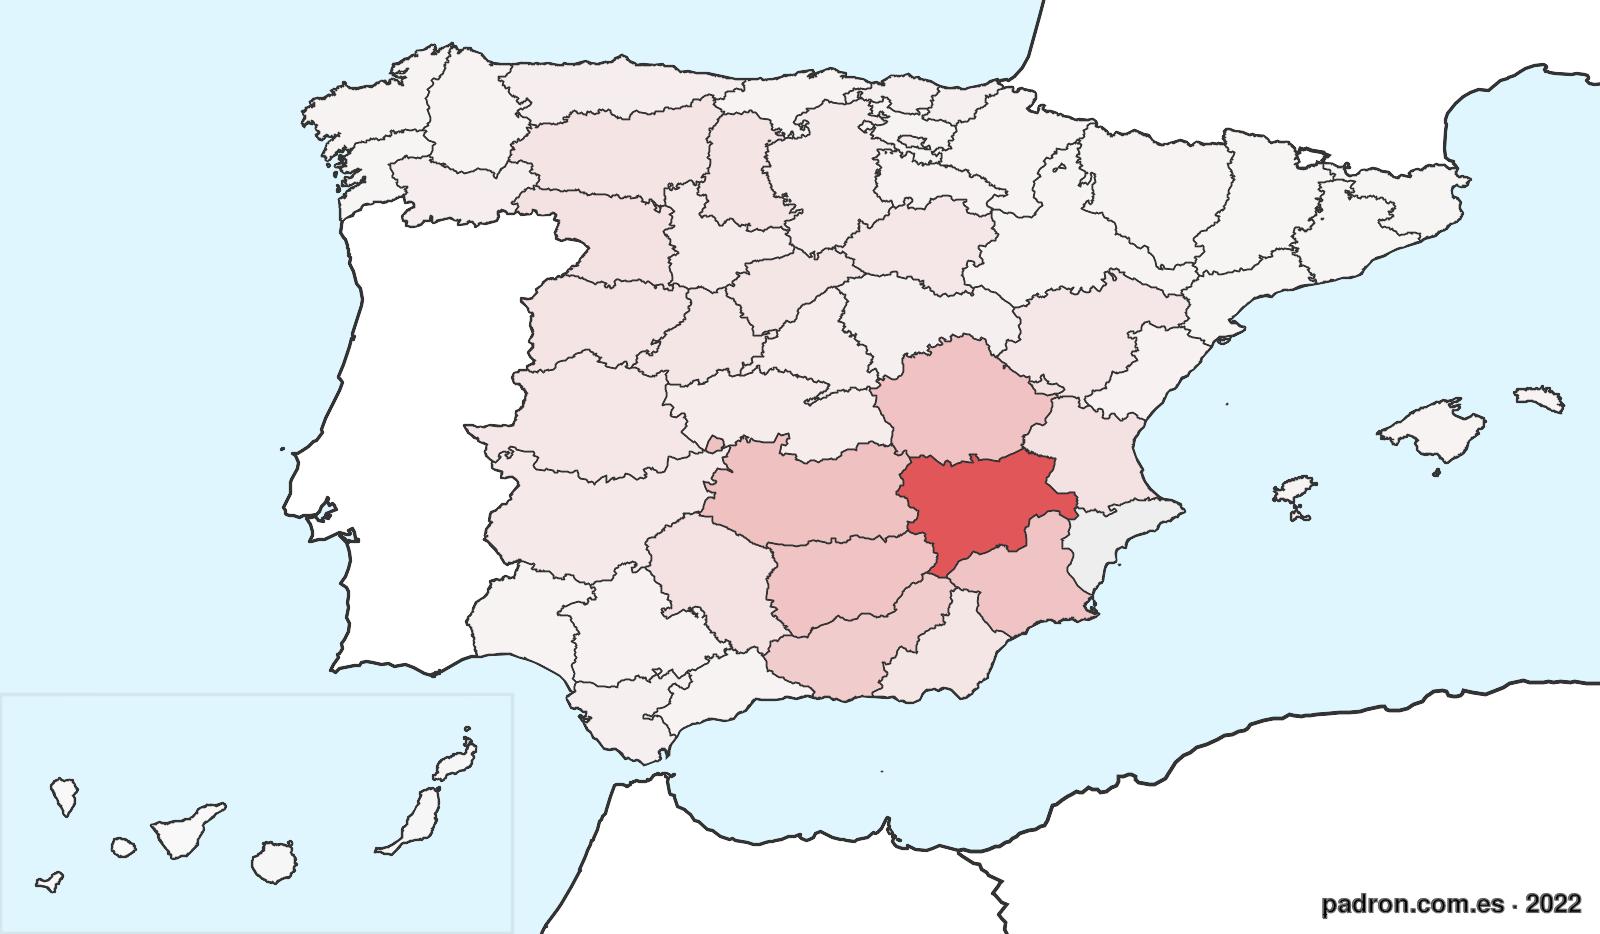 Porcentaje de población de otras provincias en Alicante/Alacant